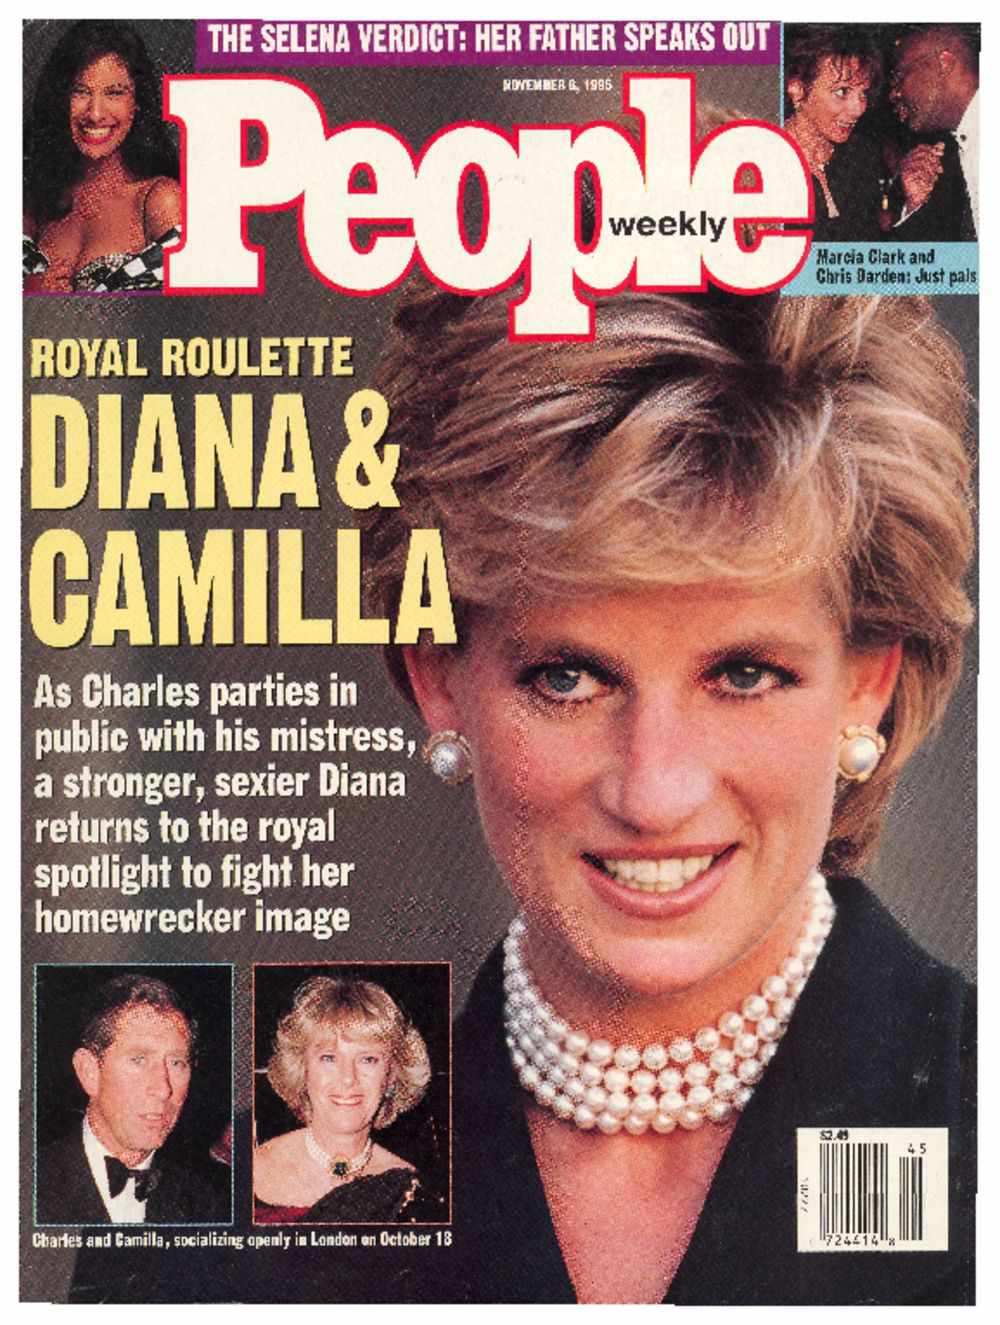 November 6, 1995: Royal Roulette